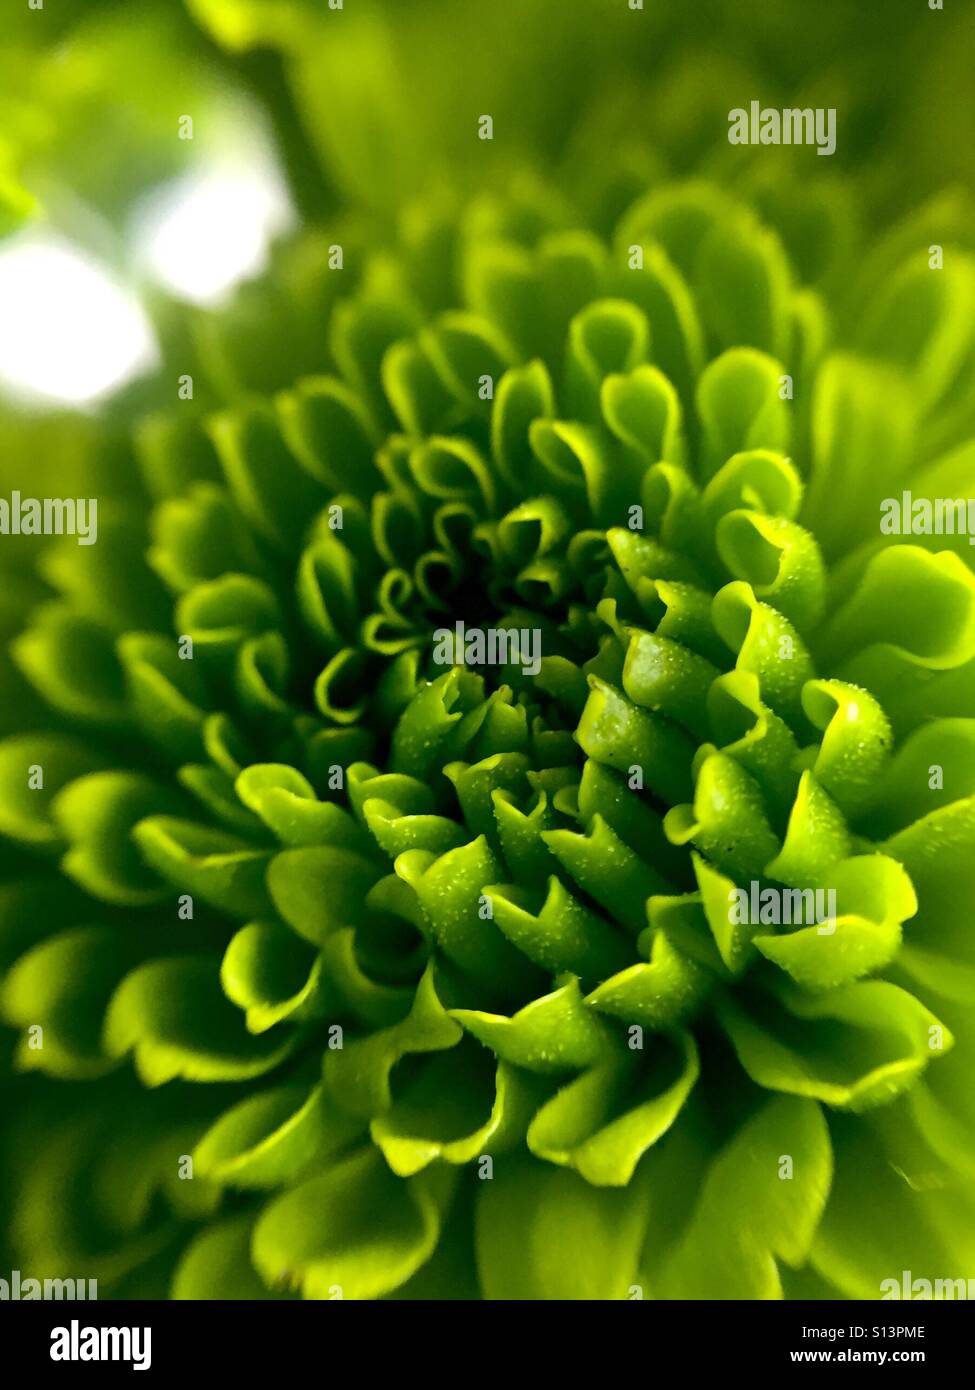 Macro of a green mini Pom Pom flower Stock Photo